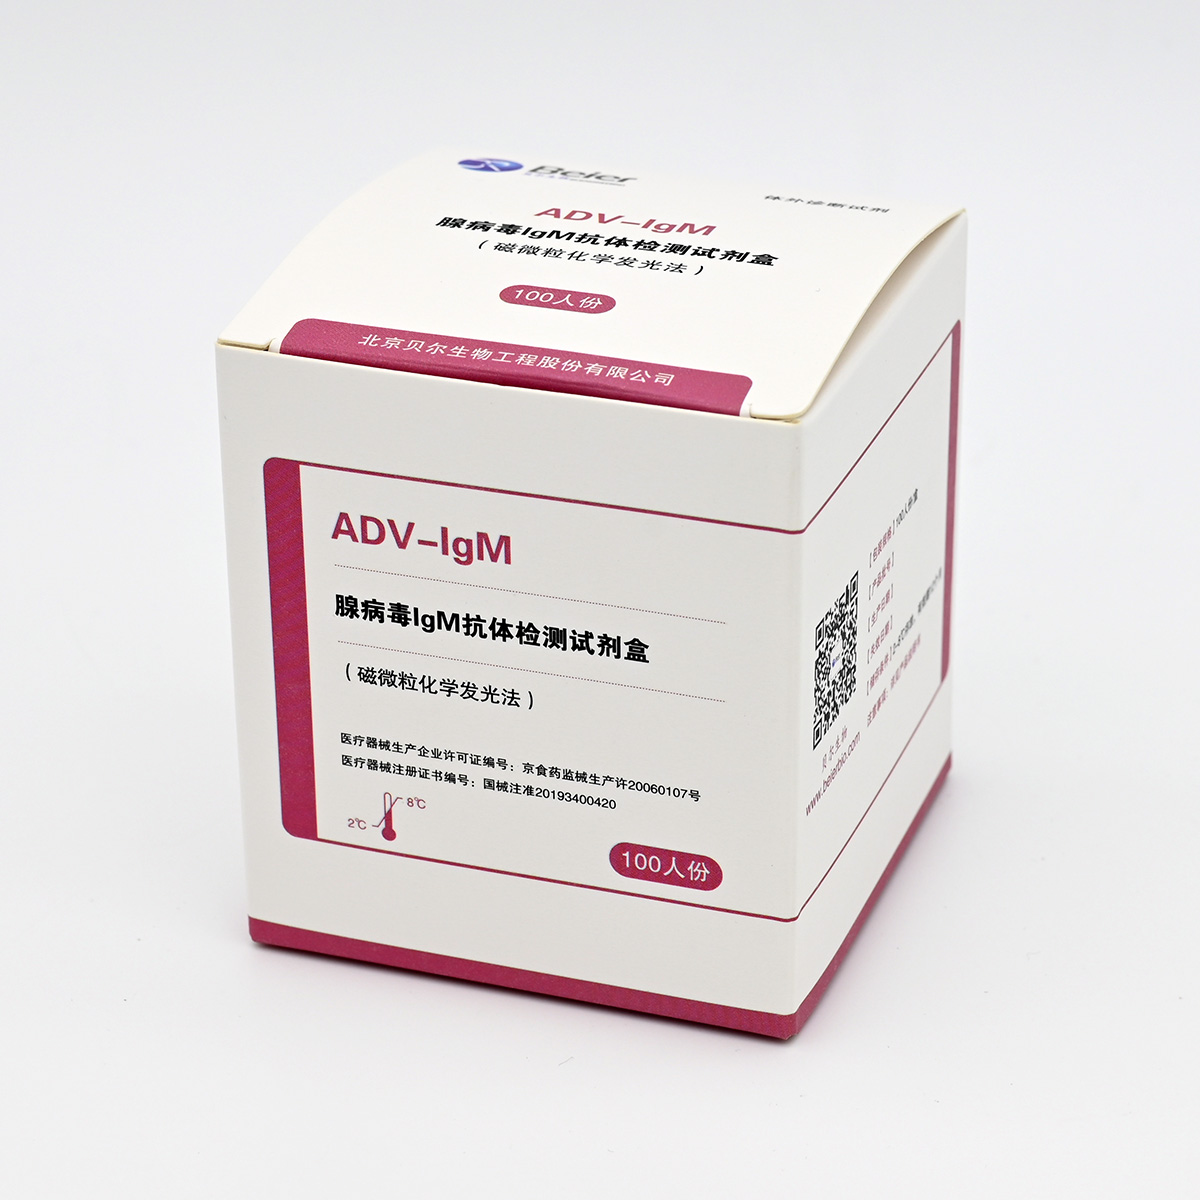 【贝尔】腺病毒IgM抗体检测试剂盒(磁微粒化学发光法)